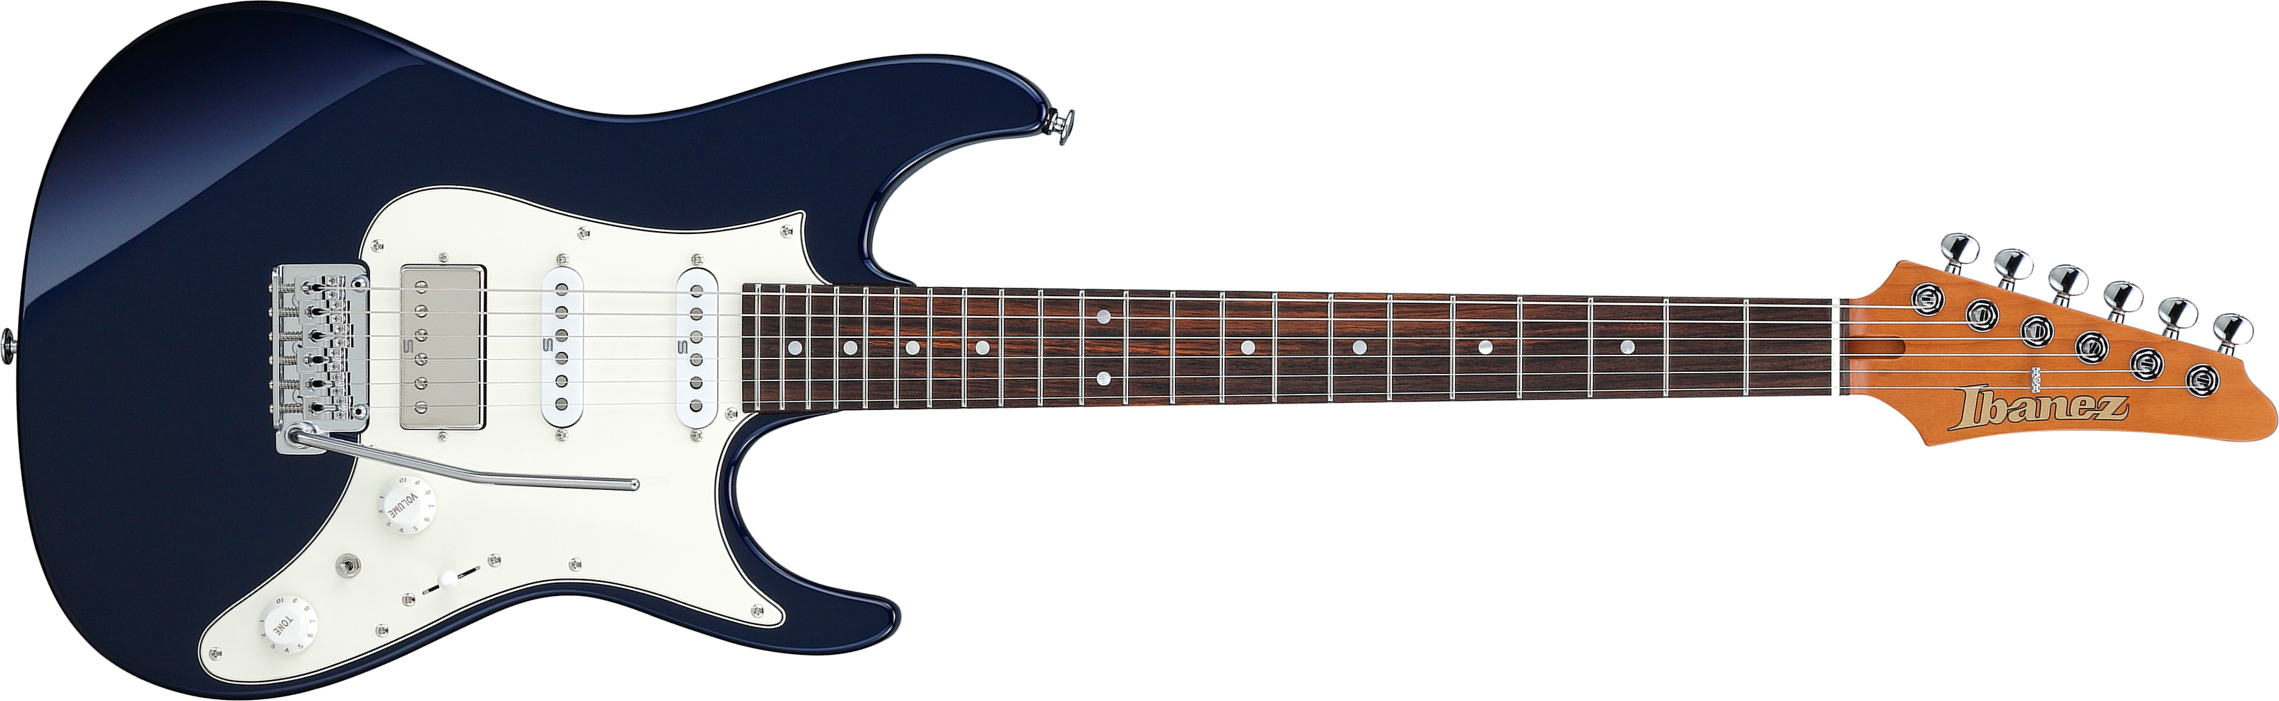 Ibanez Az2204nw Dtb Prestige Jap Hss Seymour Duncan Trem Rw - Dark Tide Blue - Guitarra eléctrica con forma de str. - Main picture